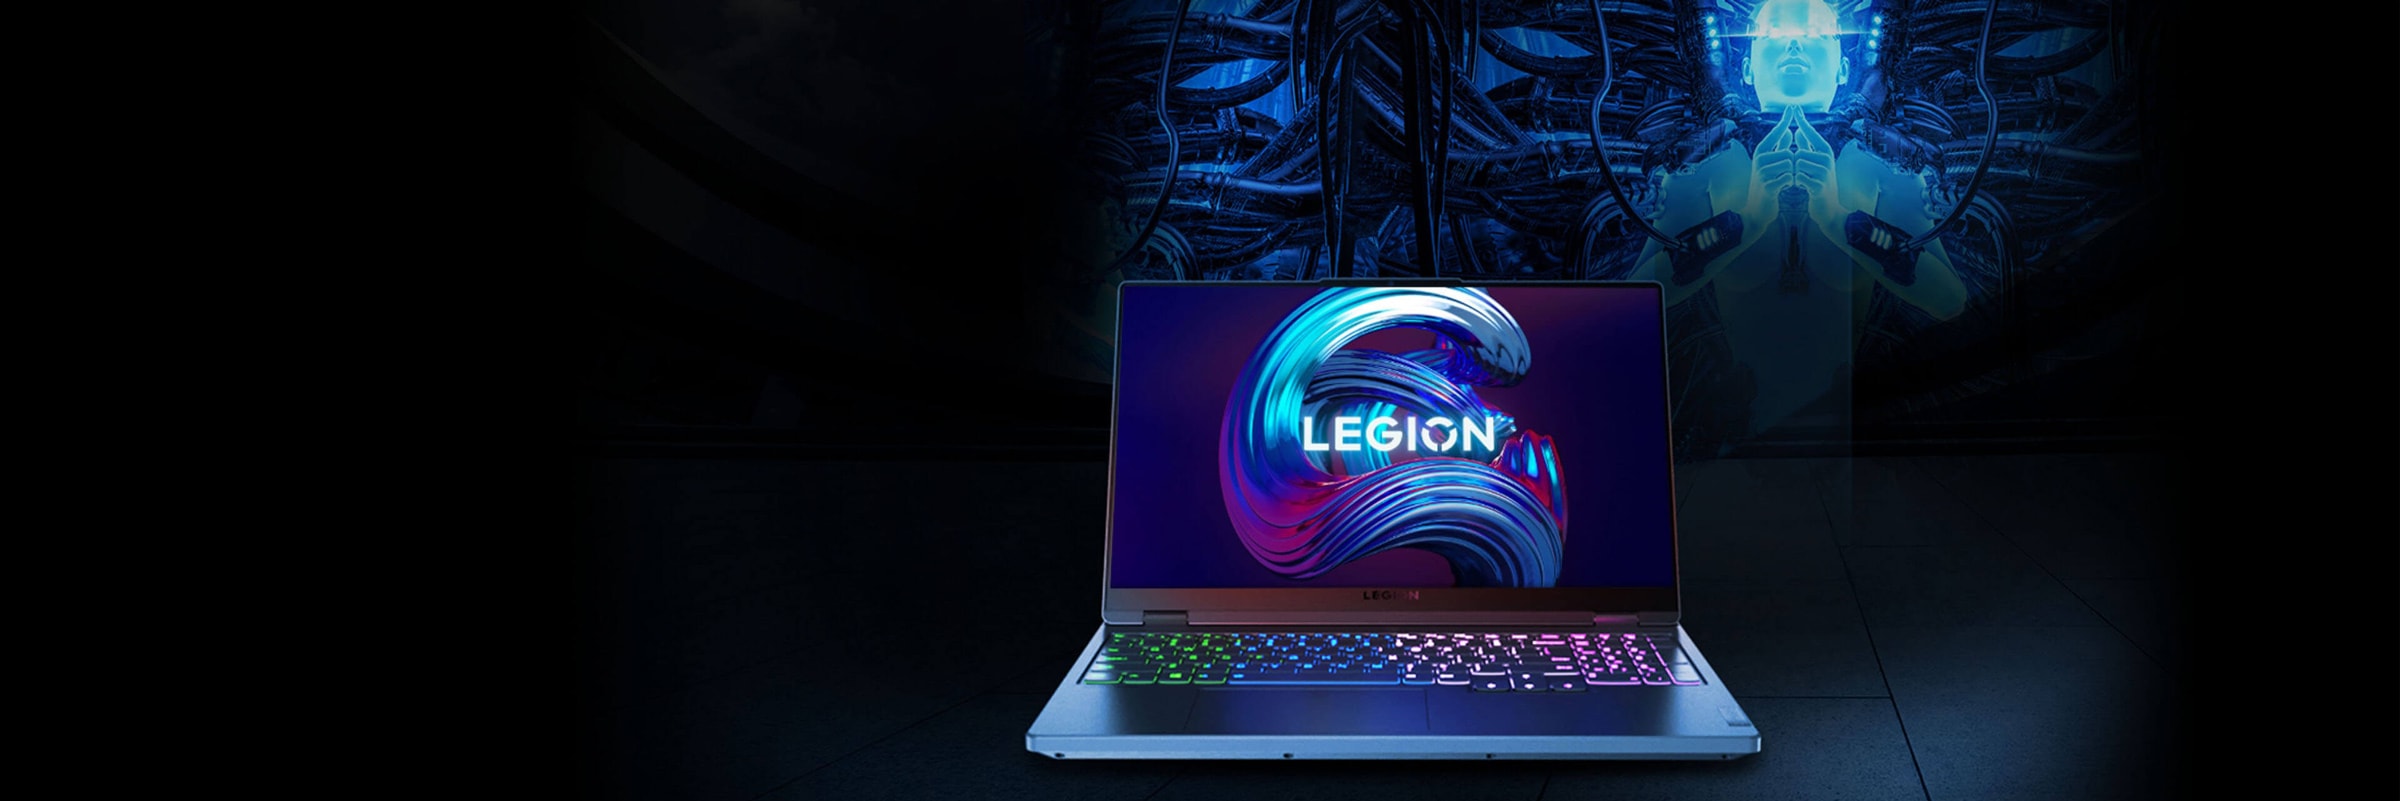 Игровой ноутбук Legion, вид спереди c открытой на 90 градусов крышкой для демонстрации экрана дисплея и клавиатуры.